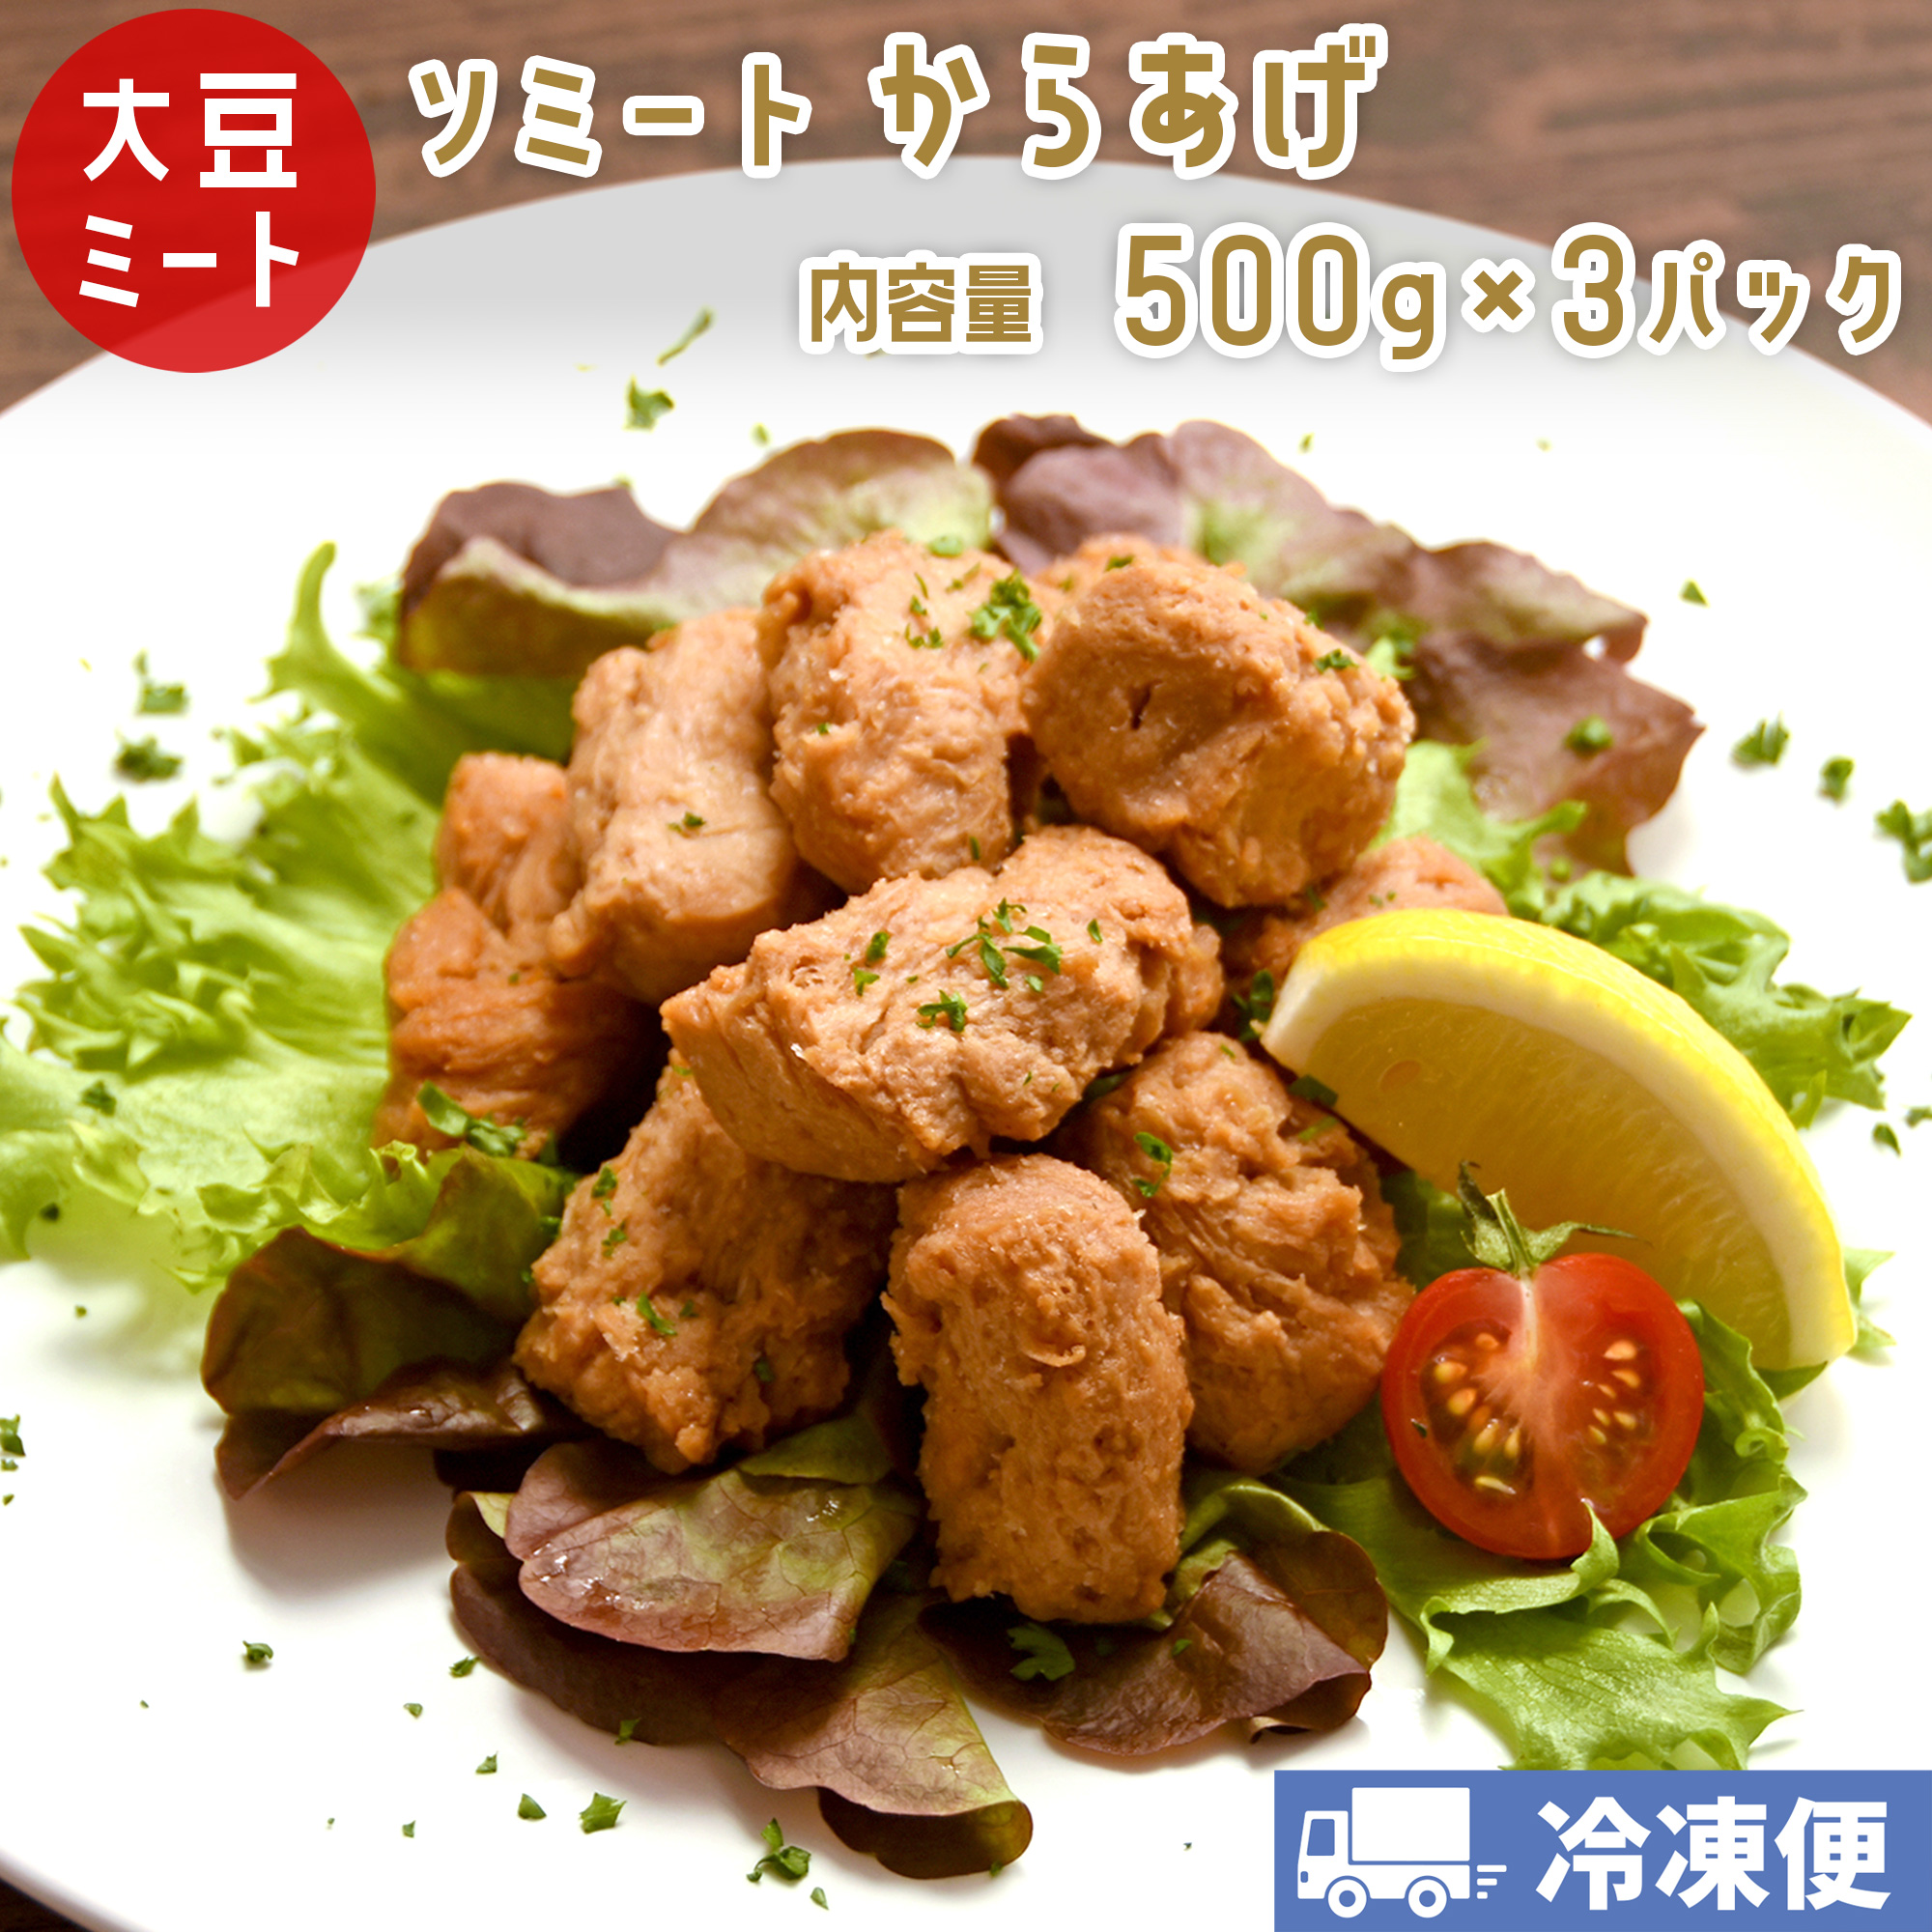 Kara-Age (Fried “Chicken”)